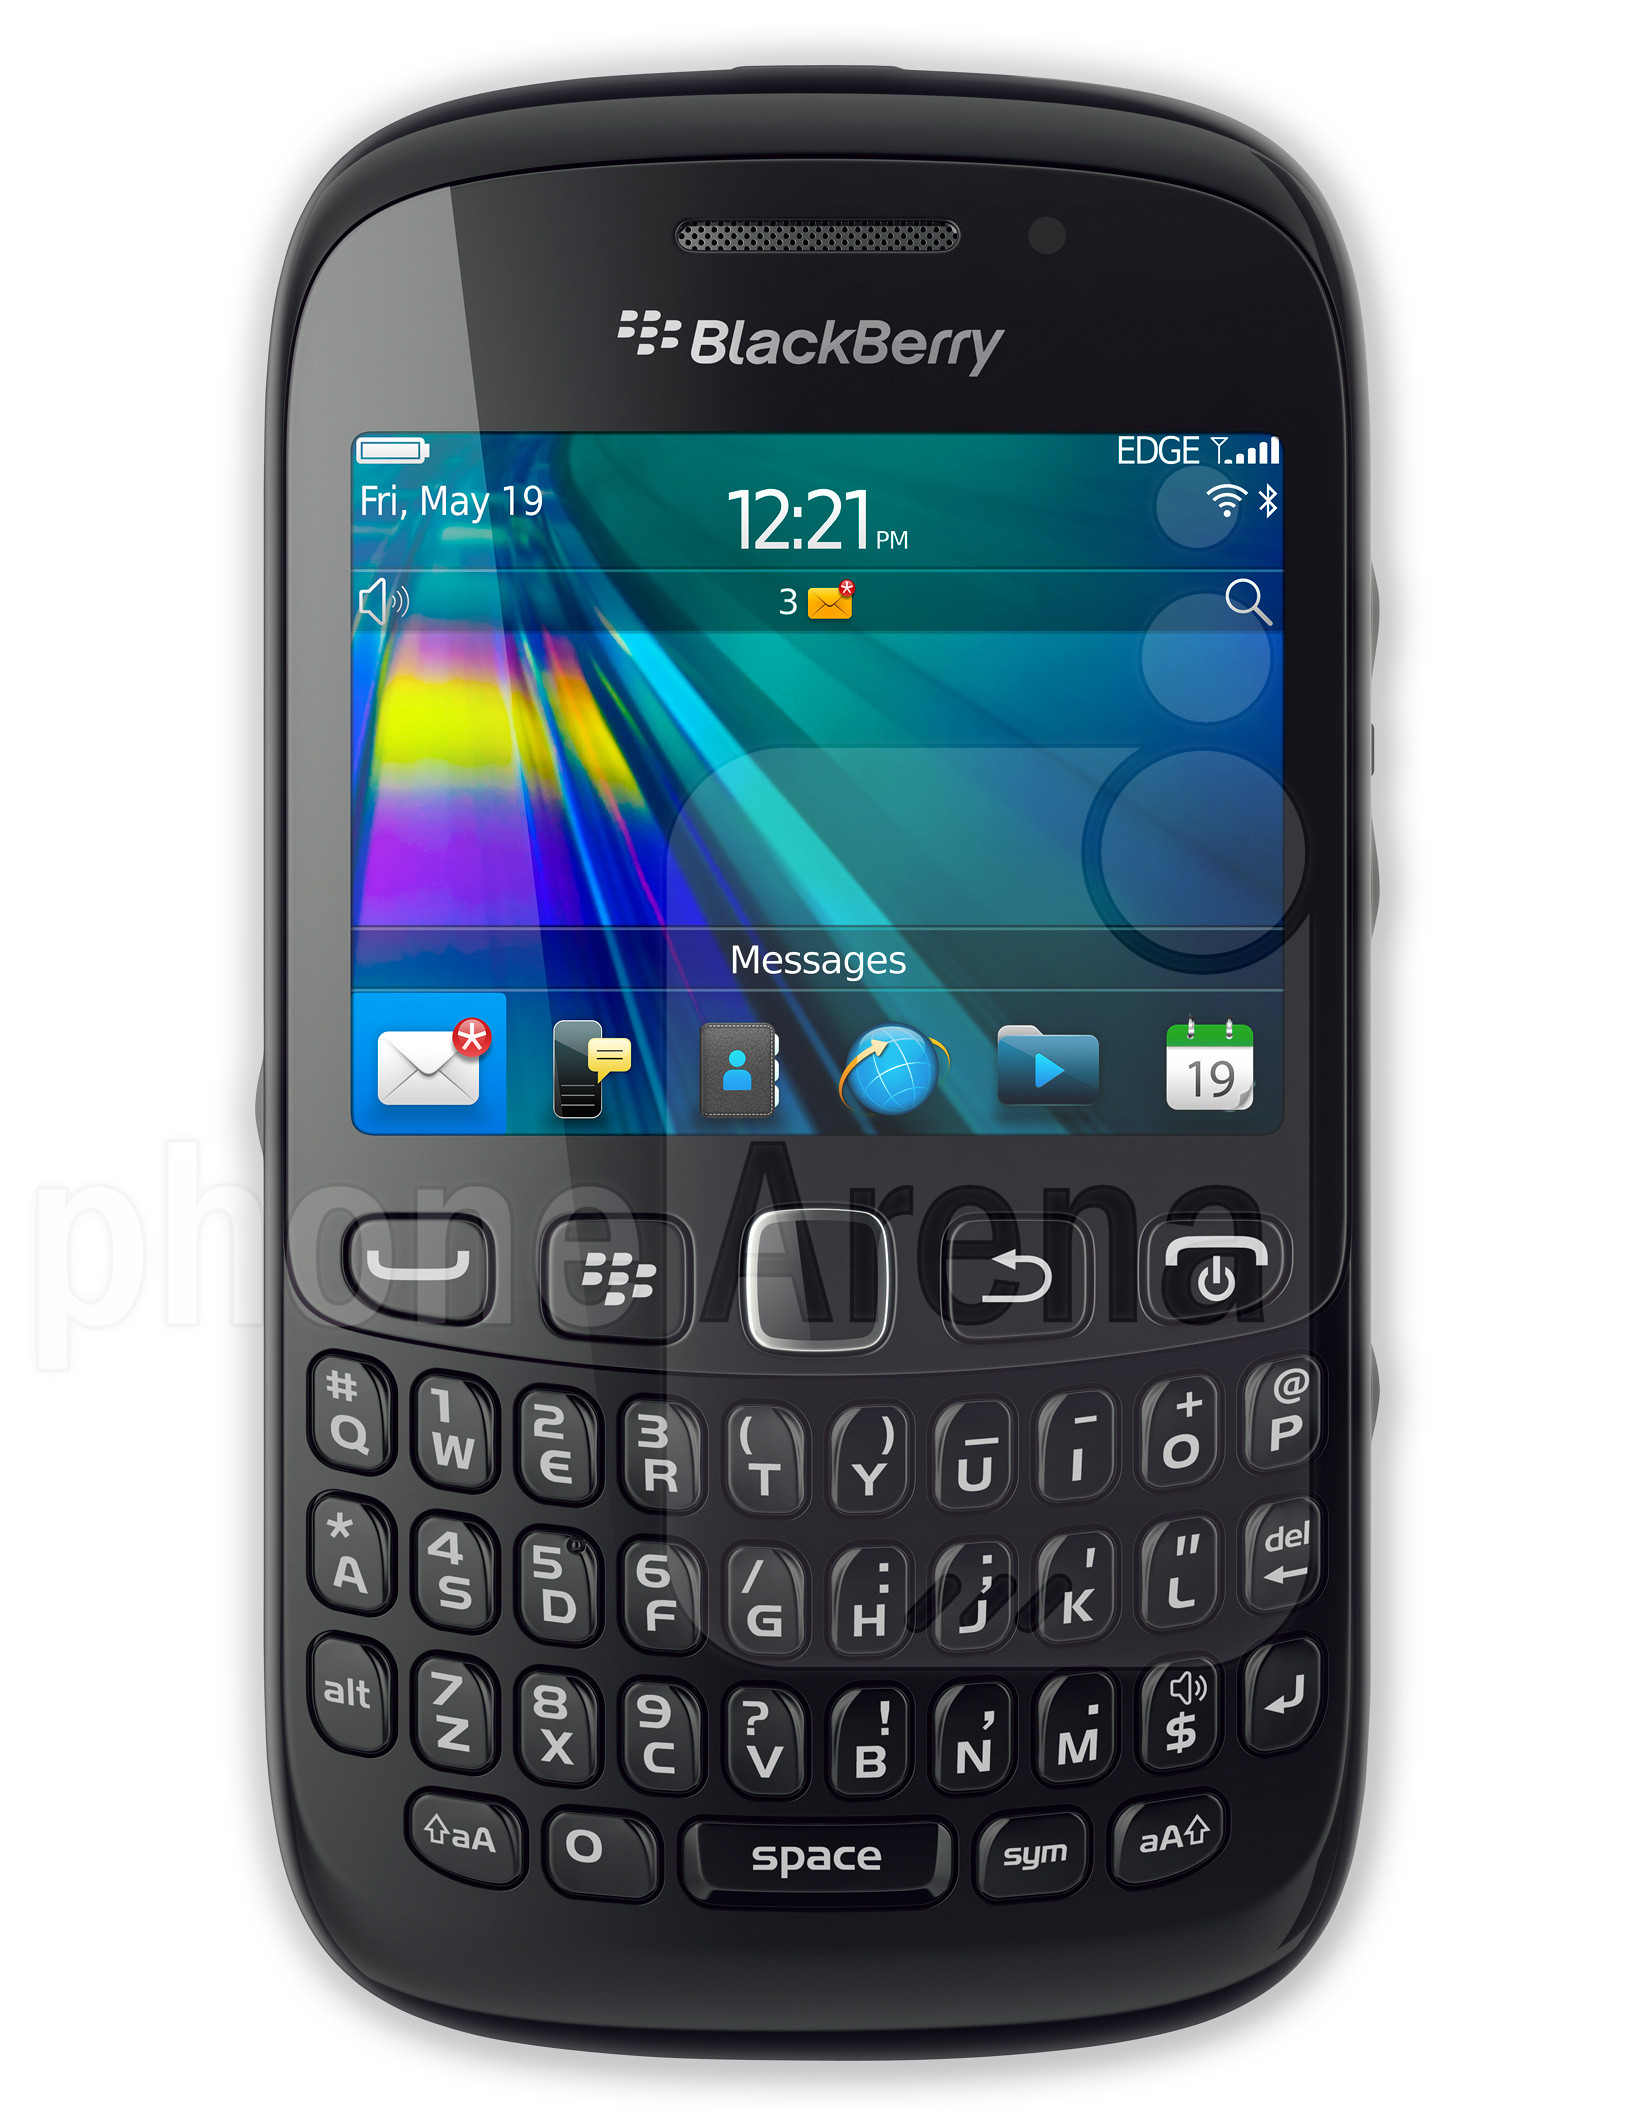 BlackBerry Curve 9220 specs